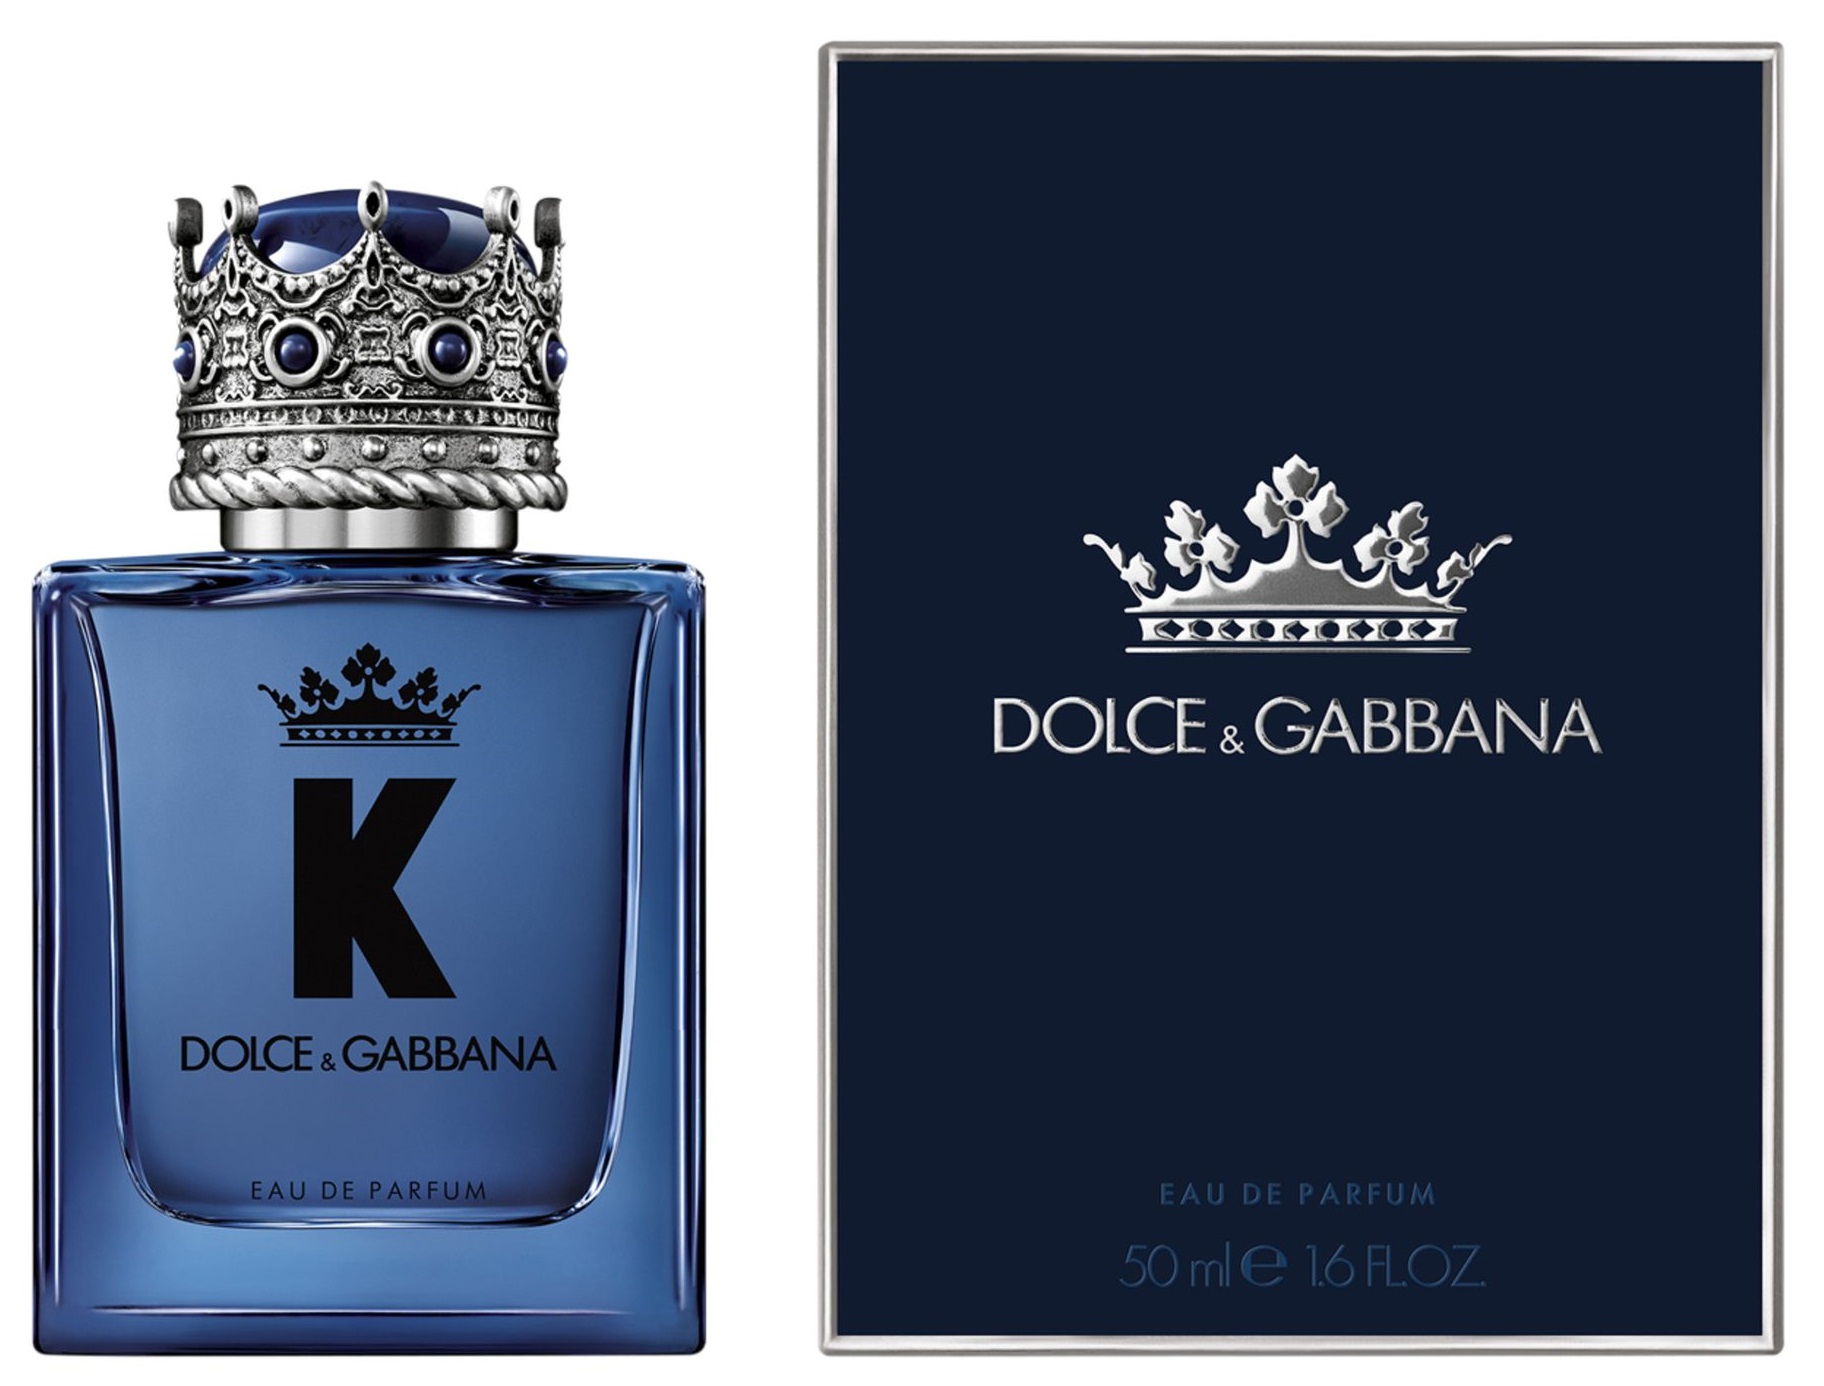 Дольче габбана купить в москве. Dolce Gabbana Eau de Parfum. Dolce Gabbana k Eau de Parfum. Dolce & Gabbana k EDP (M) 50ml. Духи Dolce Gabbana King.